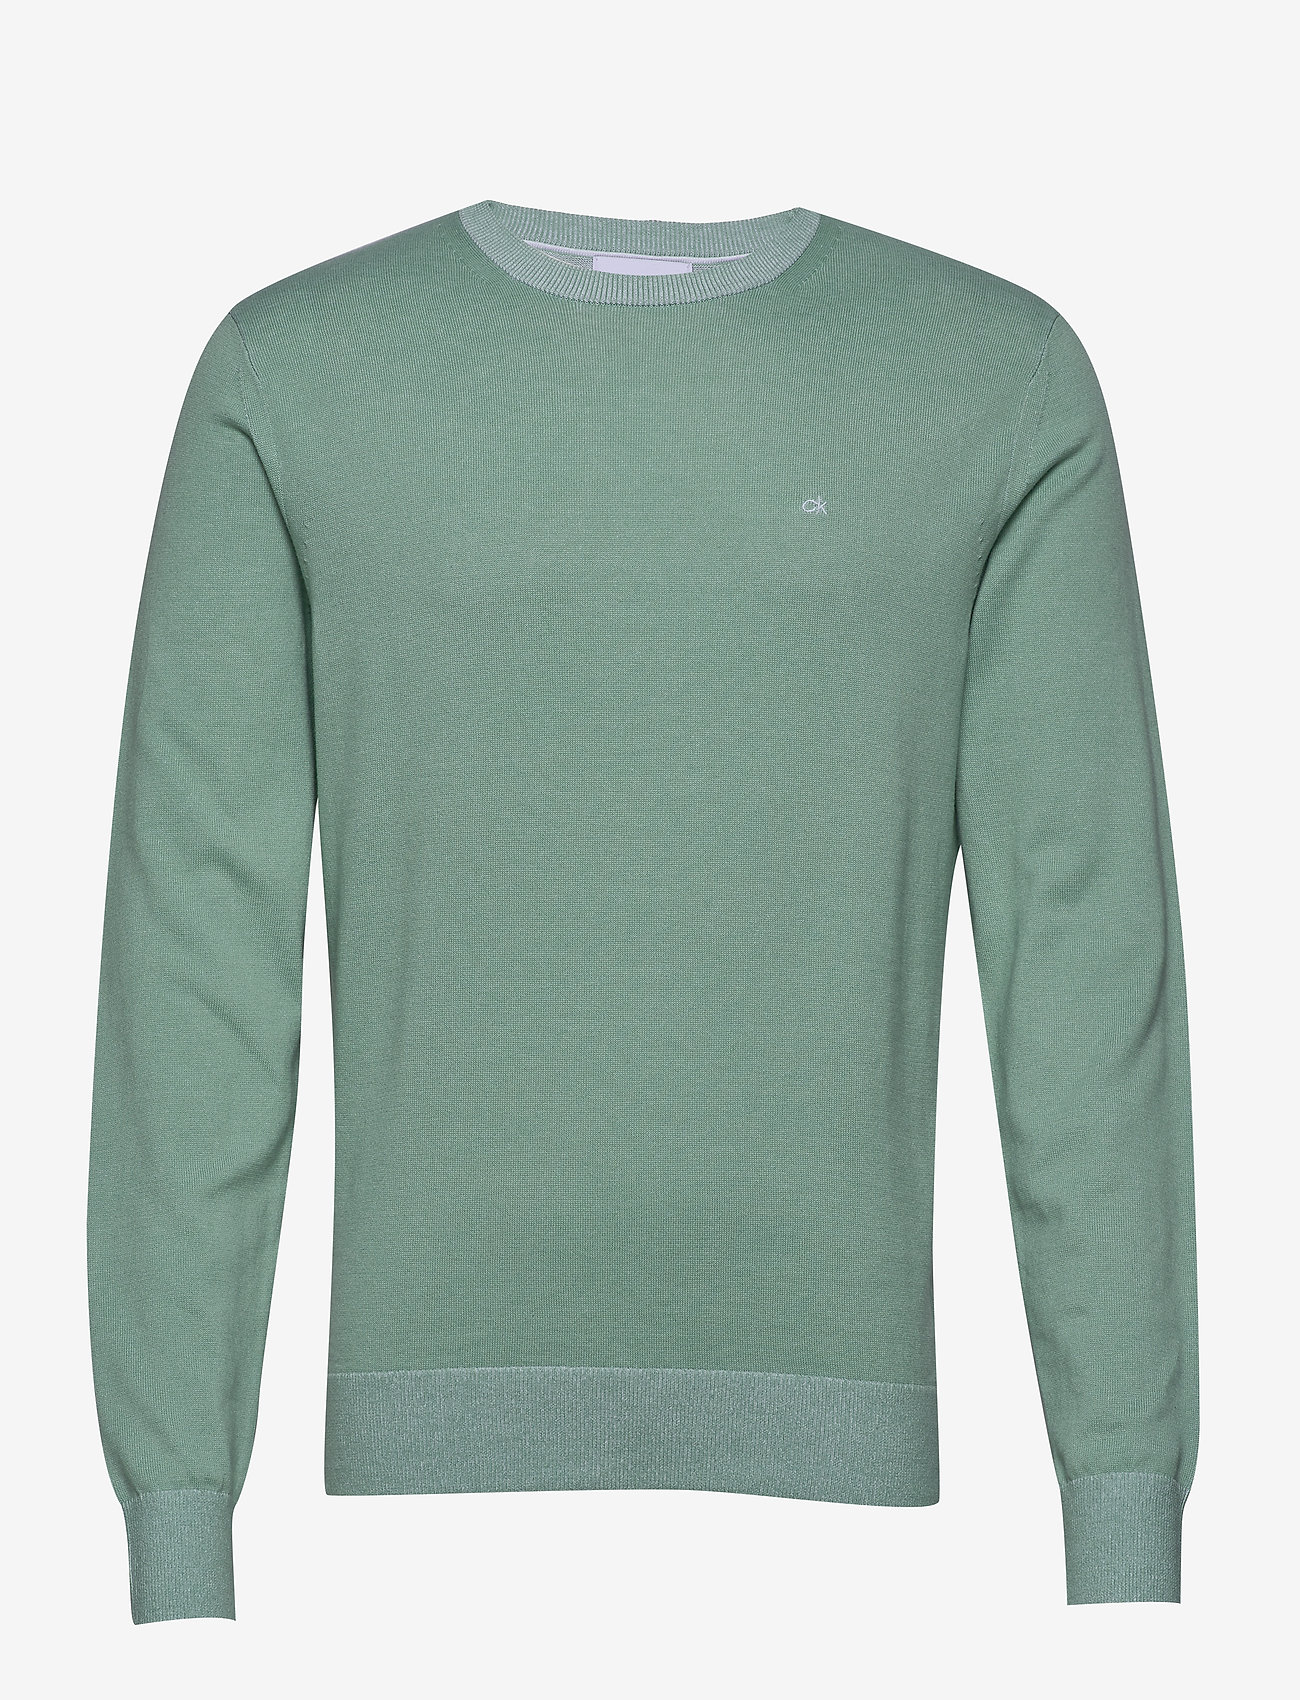 calvin klein green sweatshirt